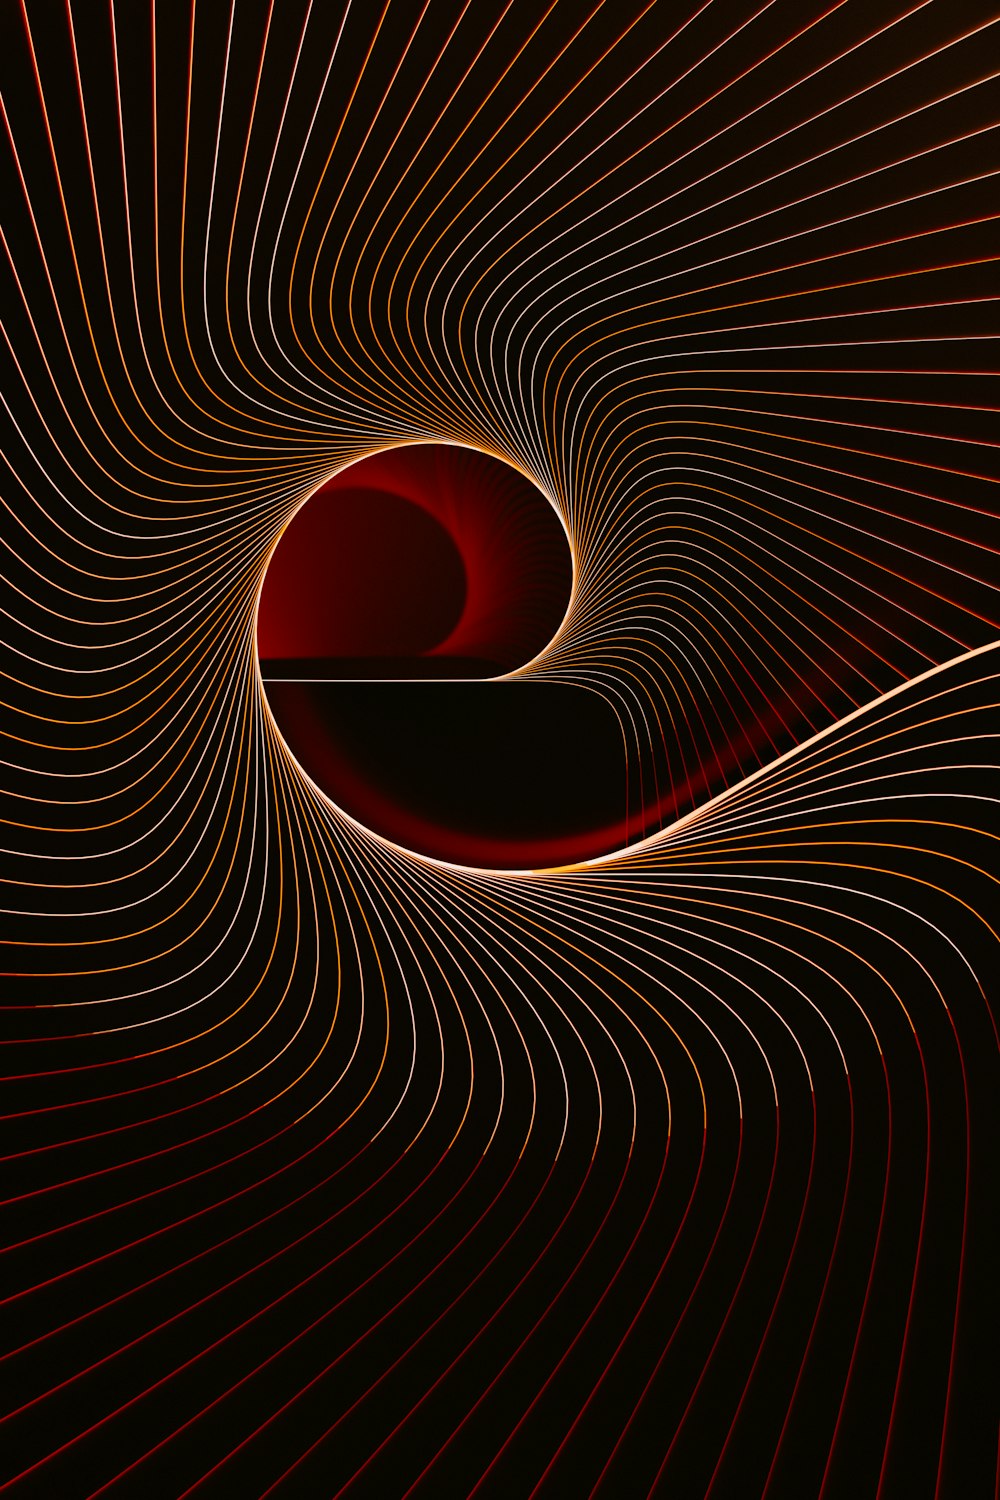 Ein computergeneriertes Bild eines roten Wirbels